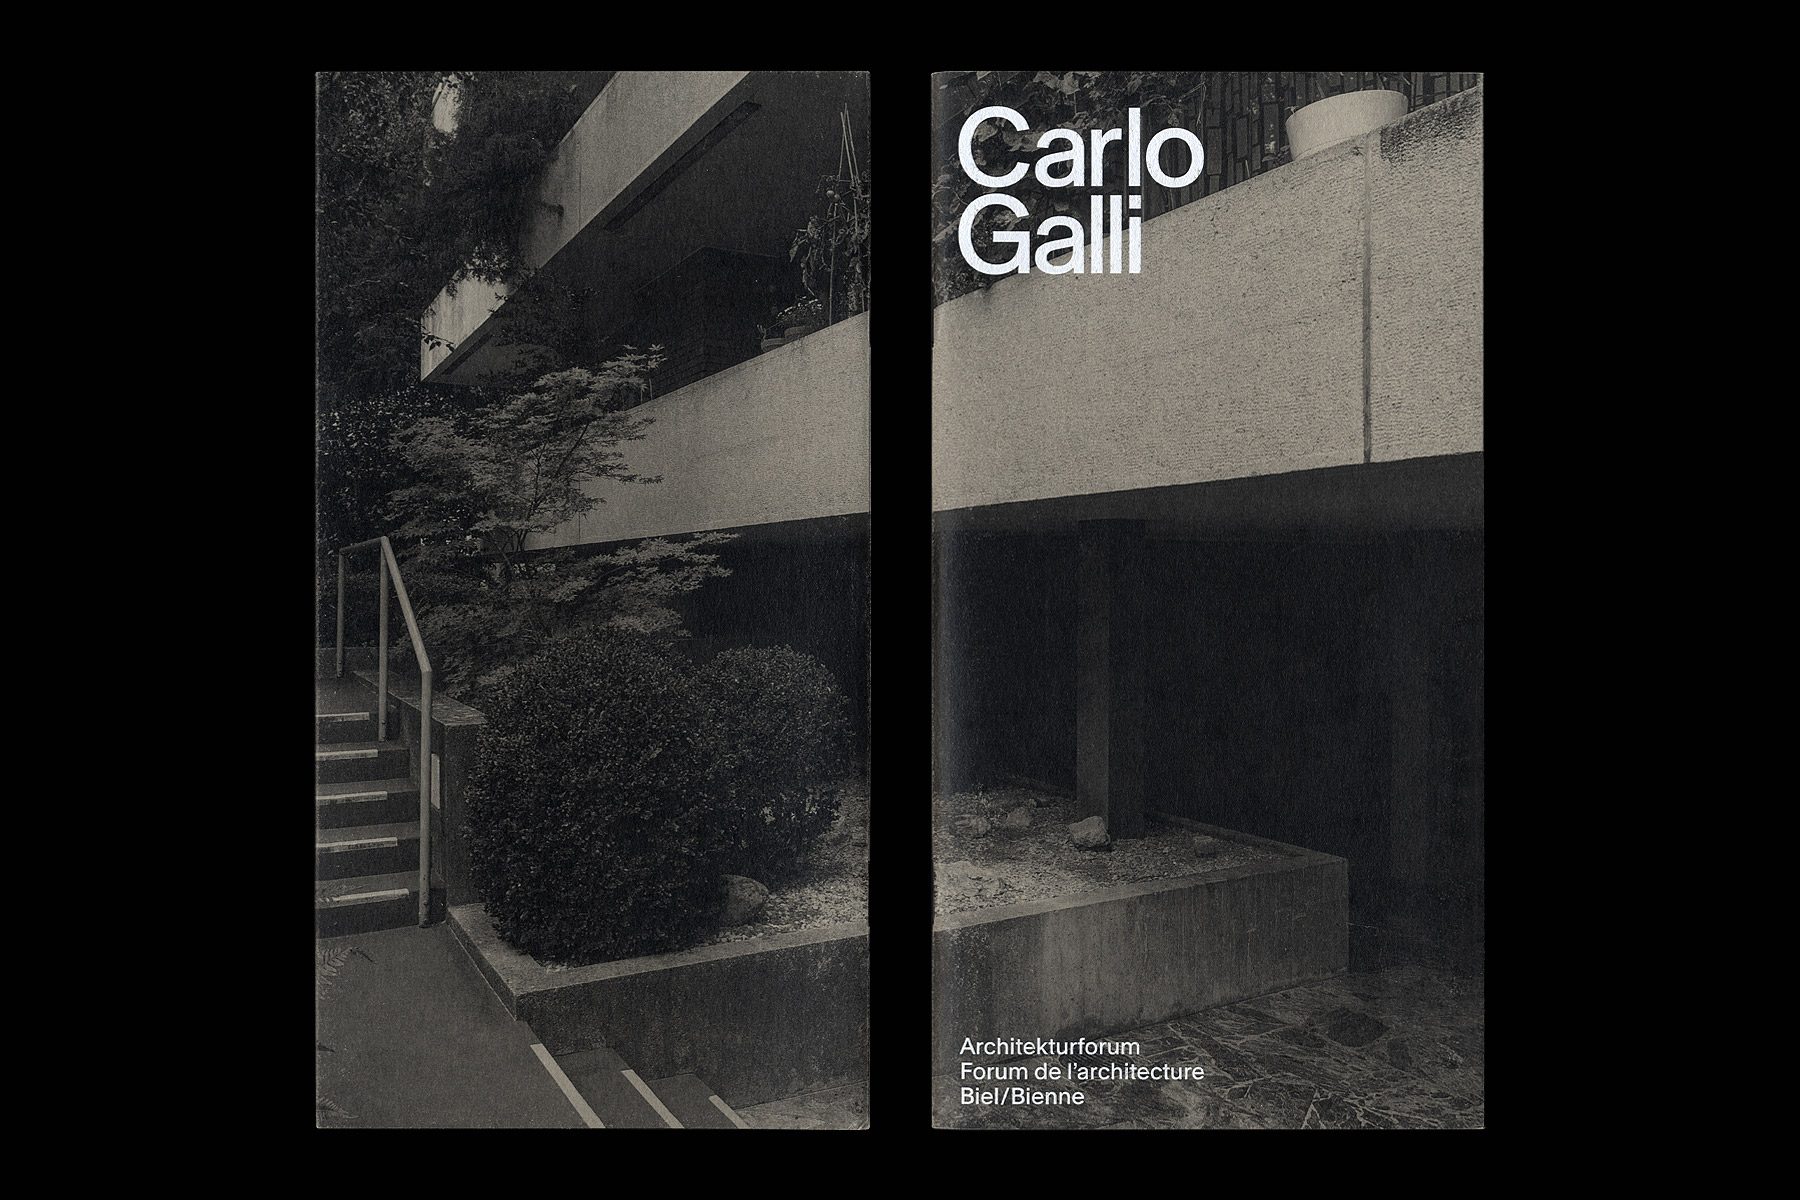 Carlo-Galli_2020_Dimitri-Jeannottat_1800x1200_11